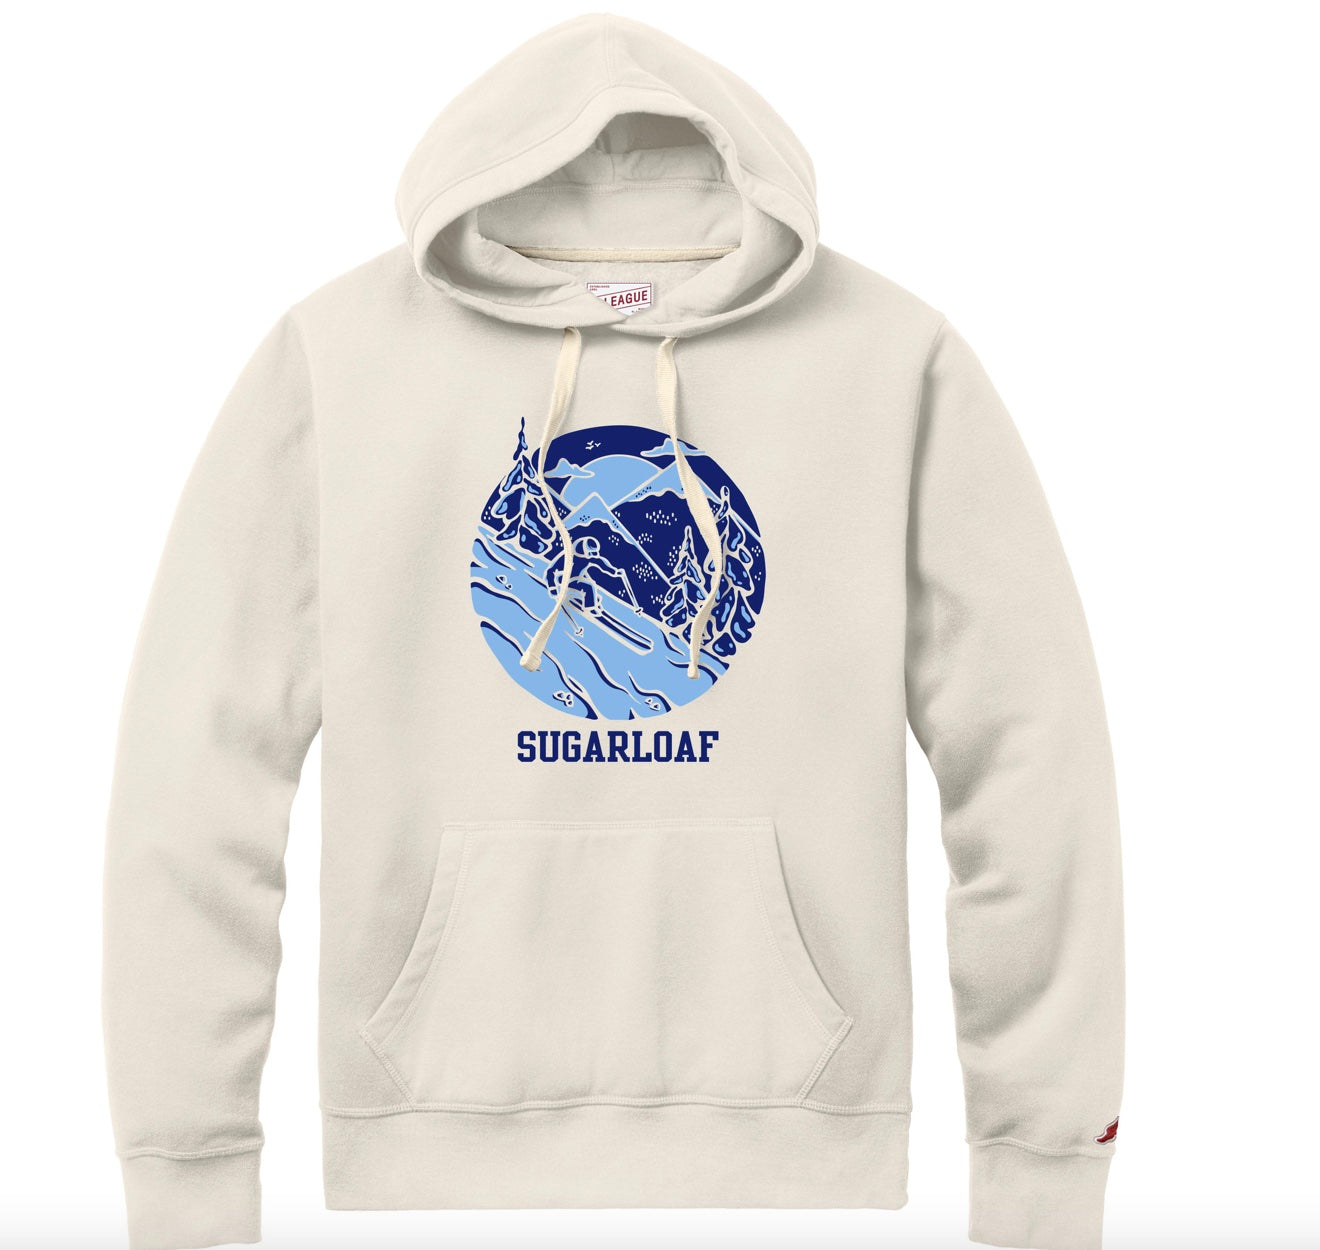 Sugarloaf Skier Hooded Sweatshirt